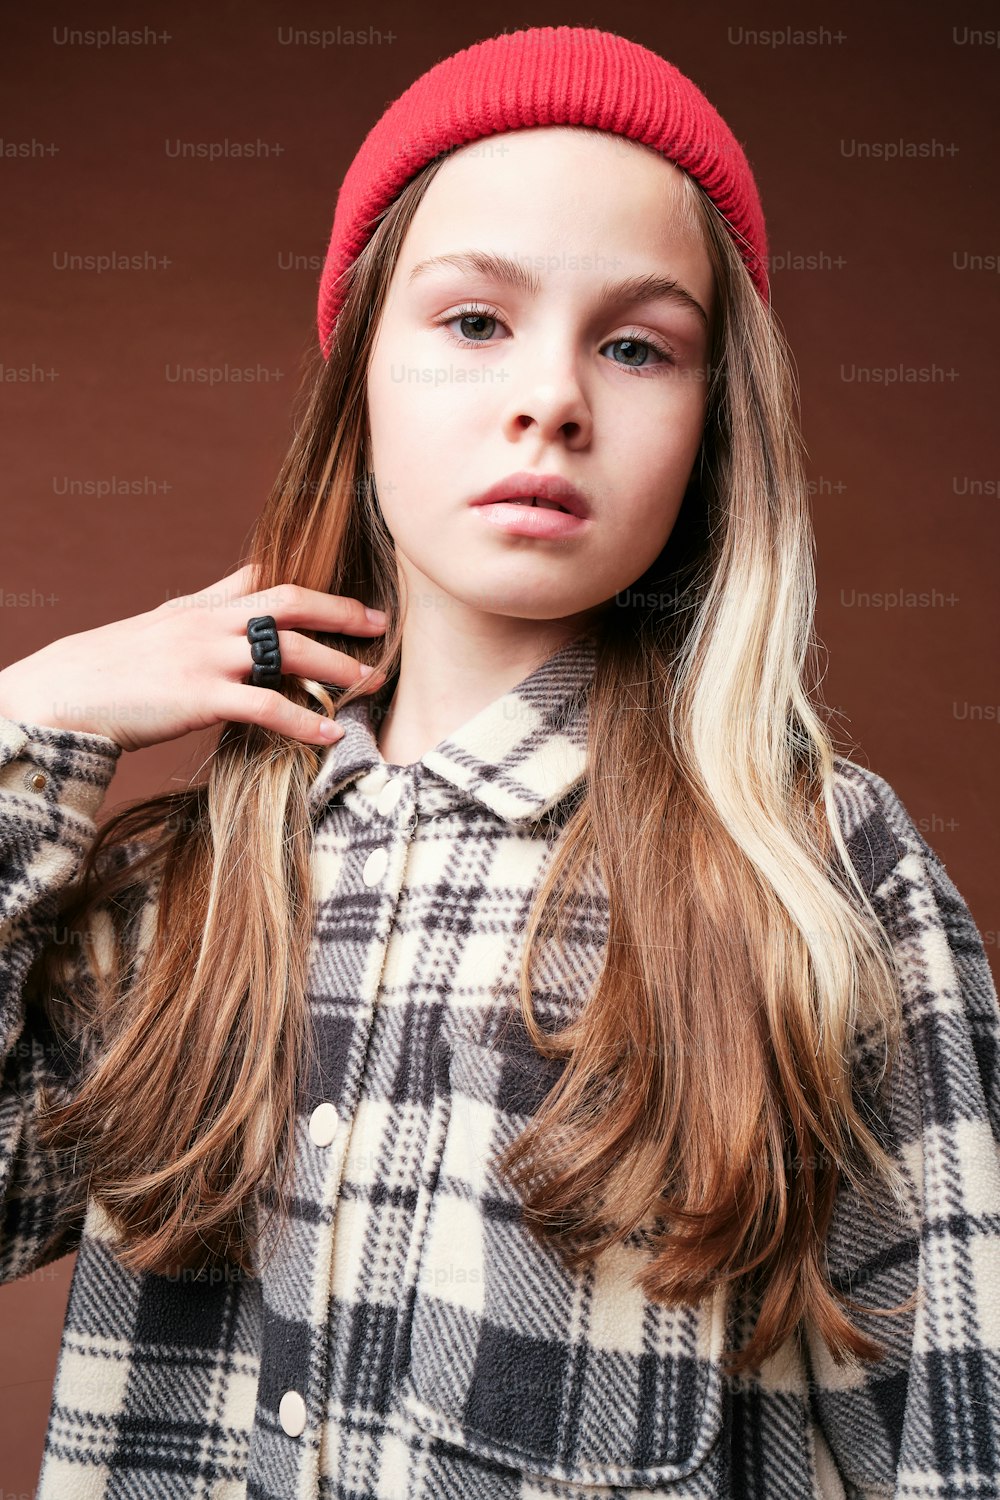 Ein Mädchen mit langen Haaren trägt einen roten Hut